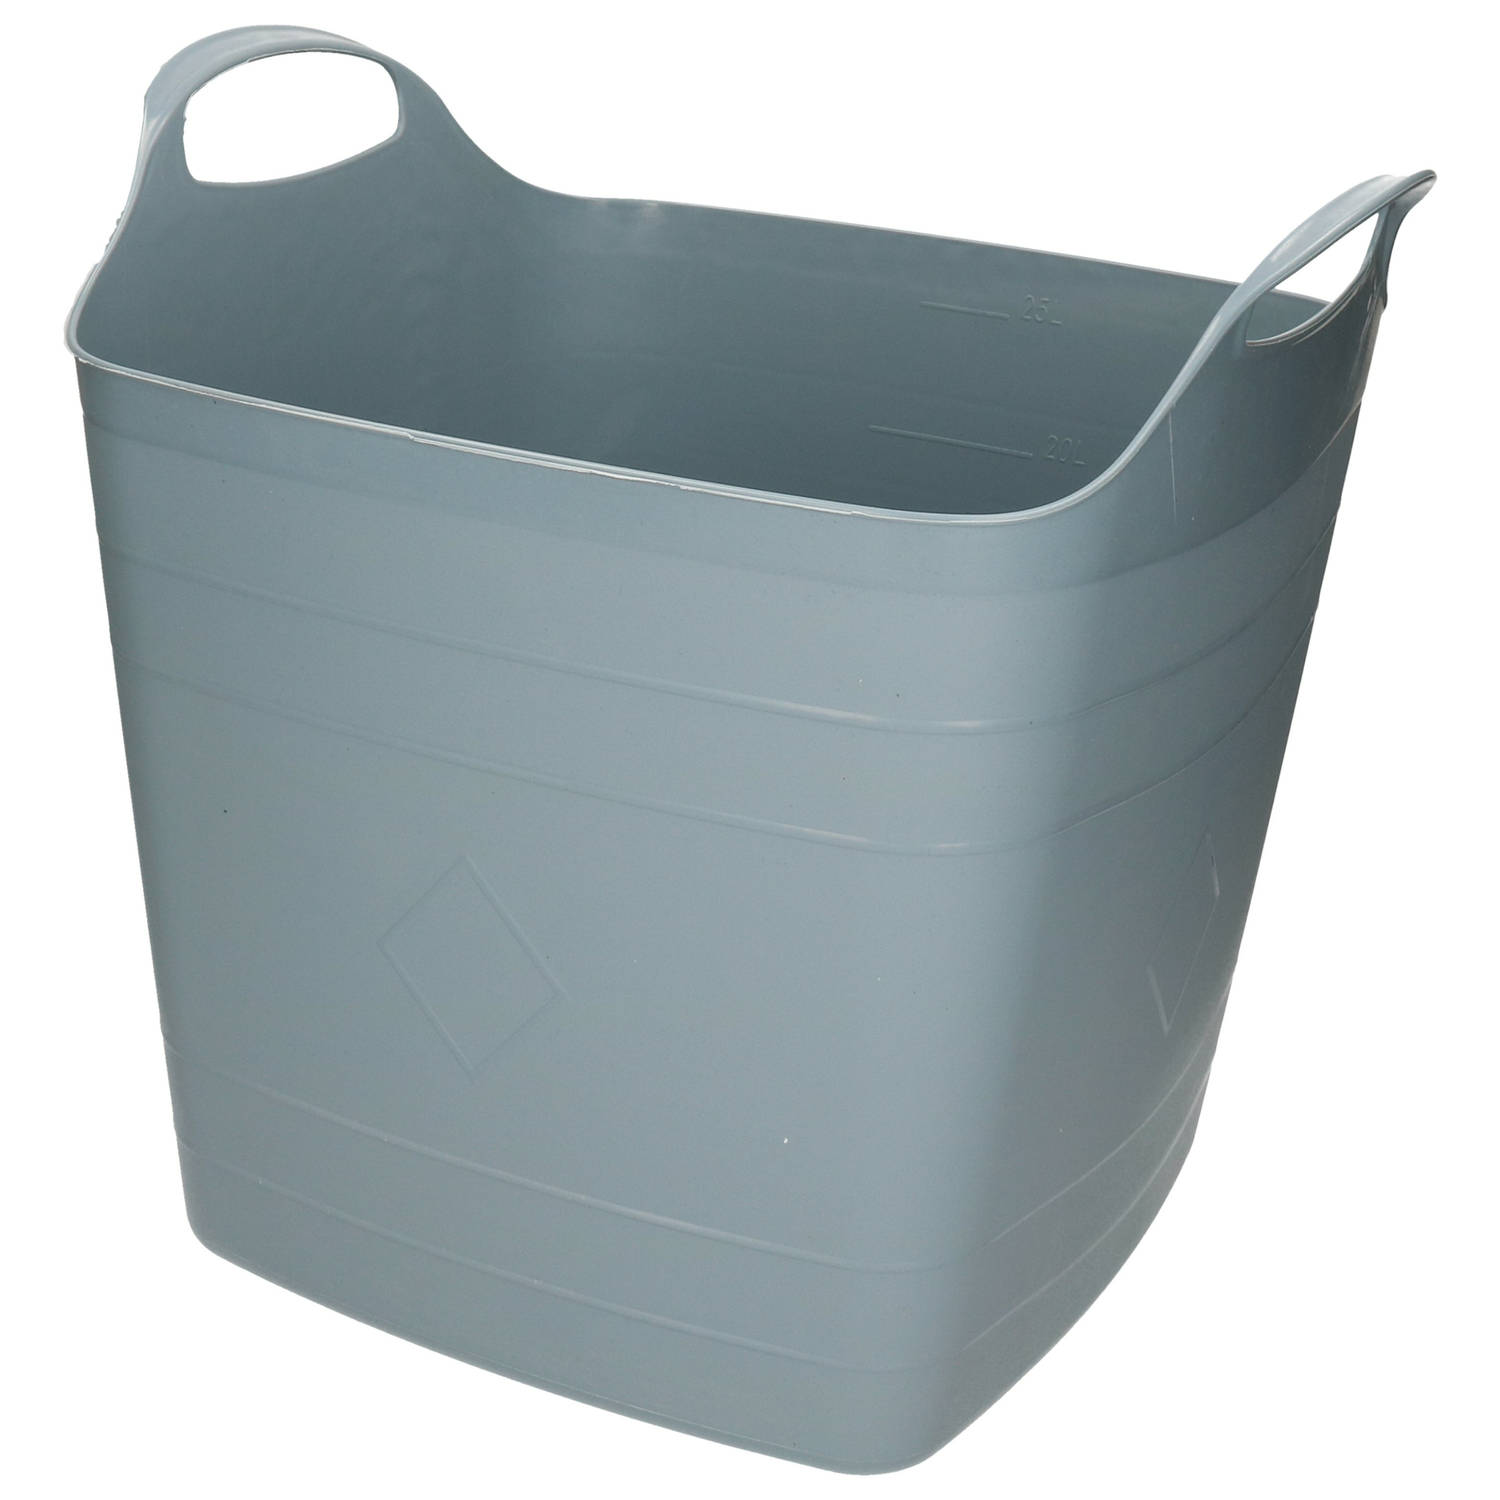 Kuip/emmer/wasmand - flexibel - grijsblauw - 25 liter - vierkant kunststof - Wasmanden | Blokker